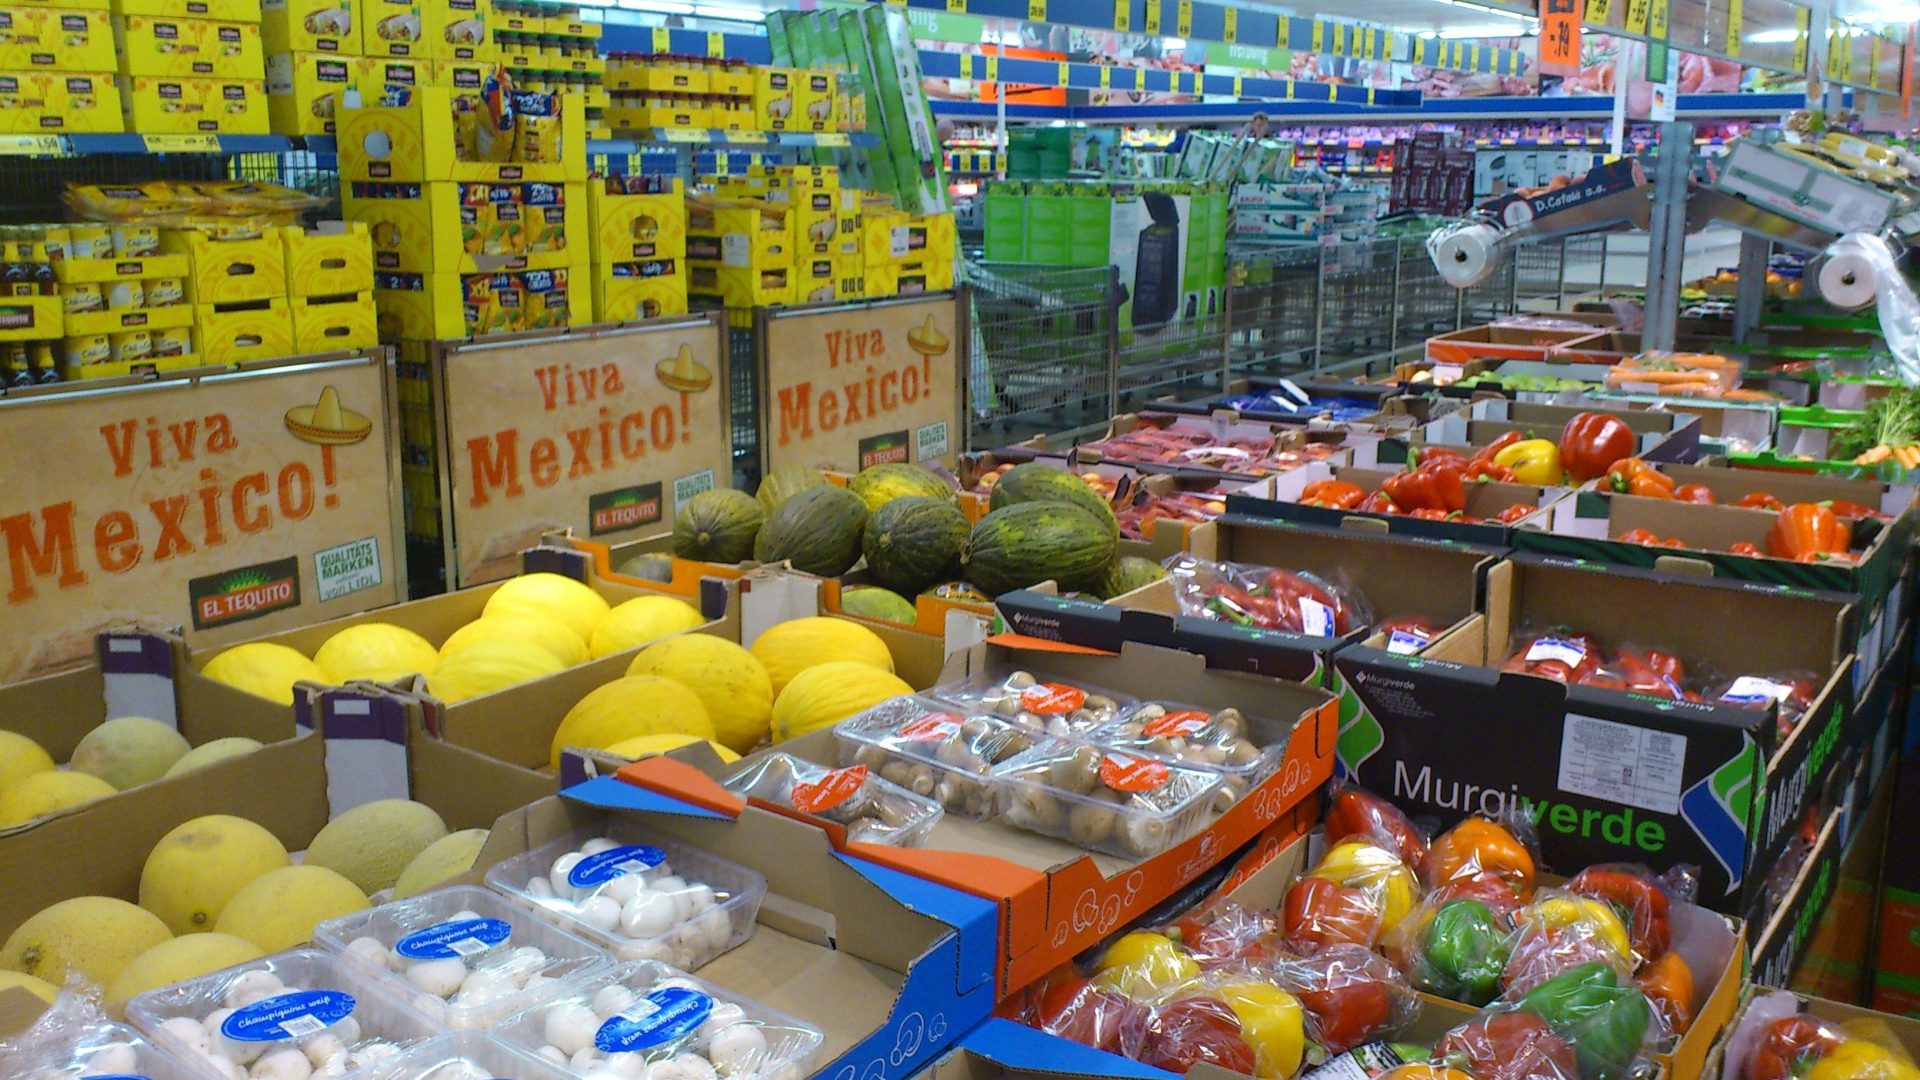 Destaca la fruta en el consumo de alimentos. EFEAGRO/Concha Rubio.